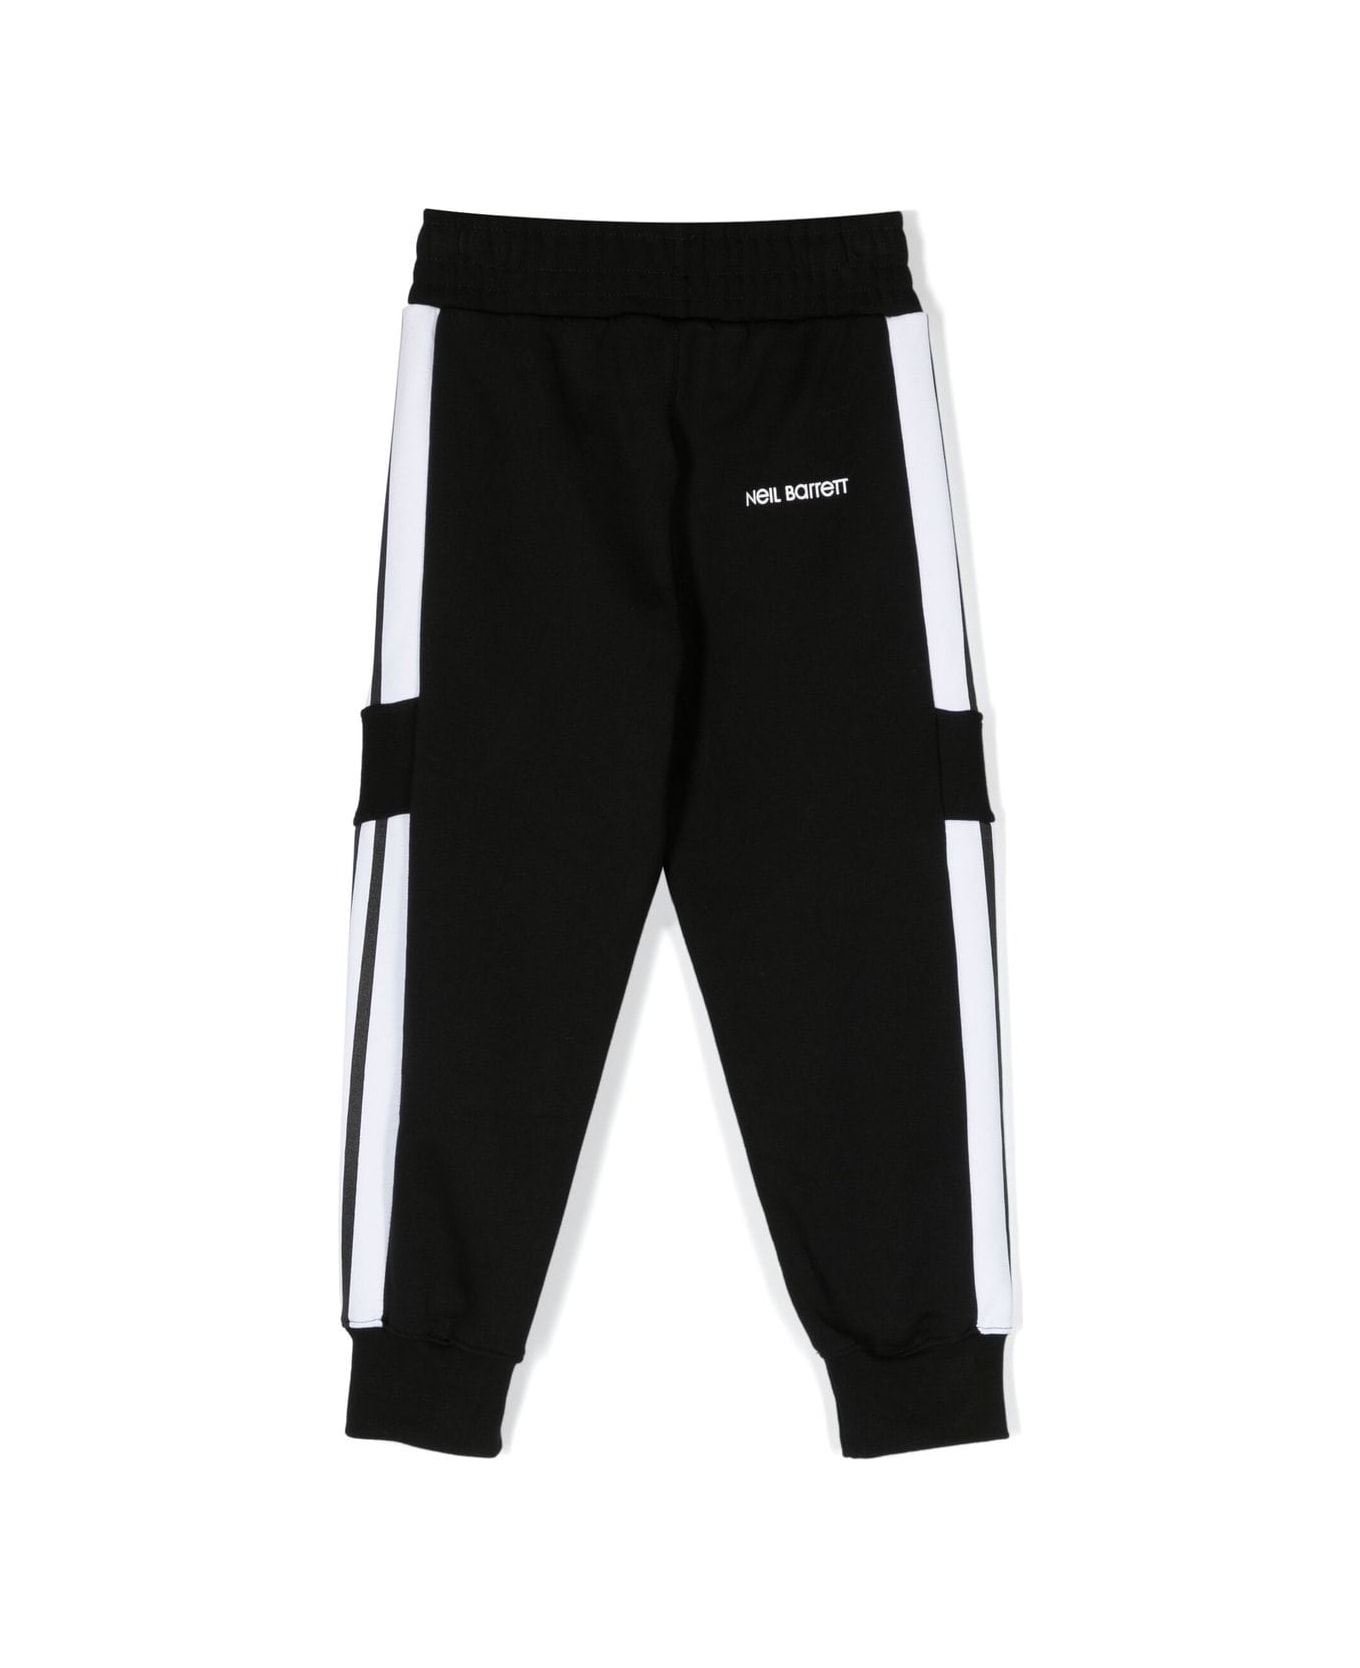 Neil Barrett Sports Trousers With Print - Black